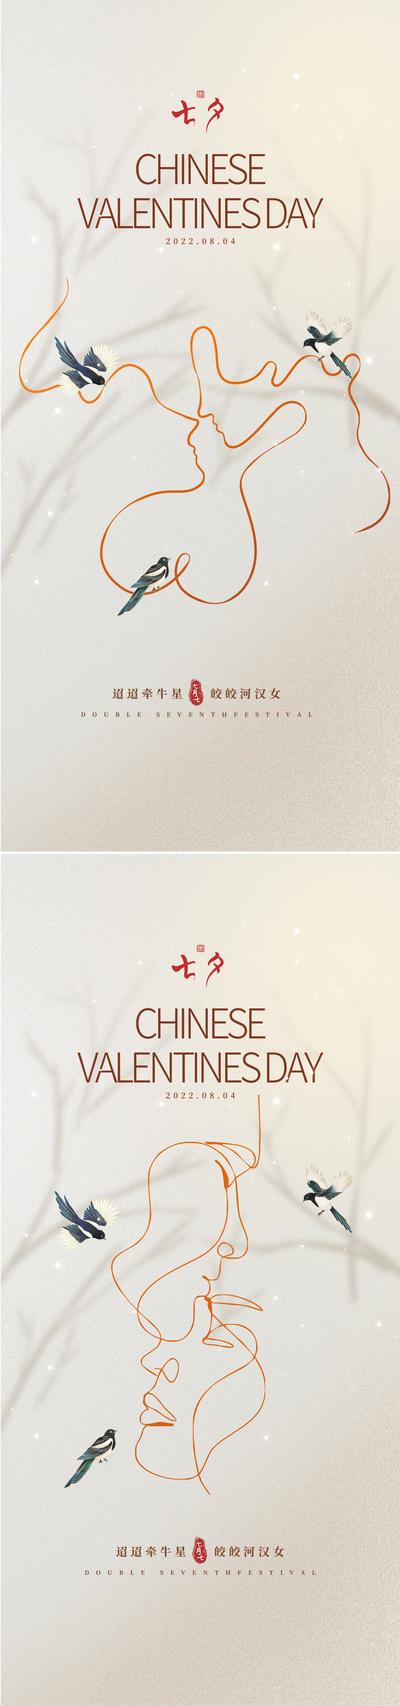 南门网 海报 中国传统节日 七夕 情人节 线条 喜鹊